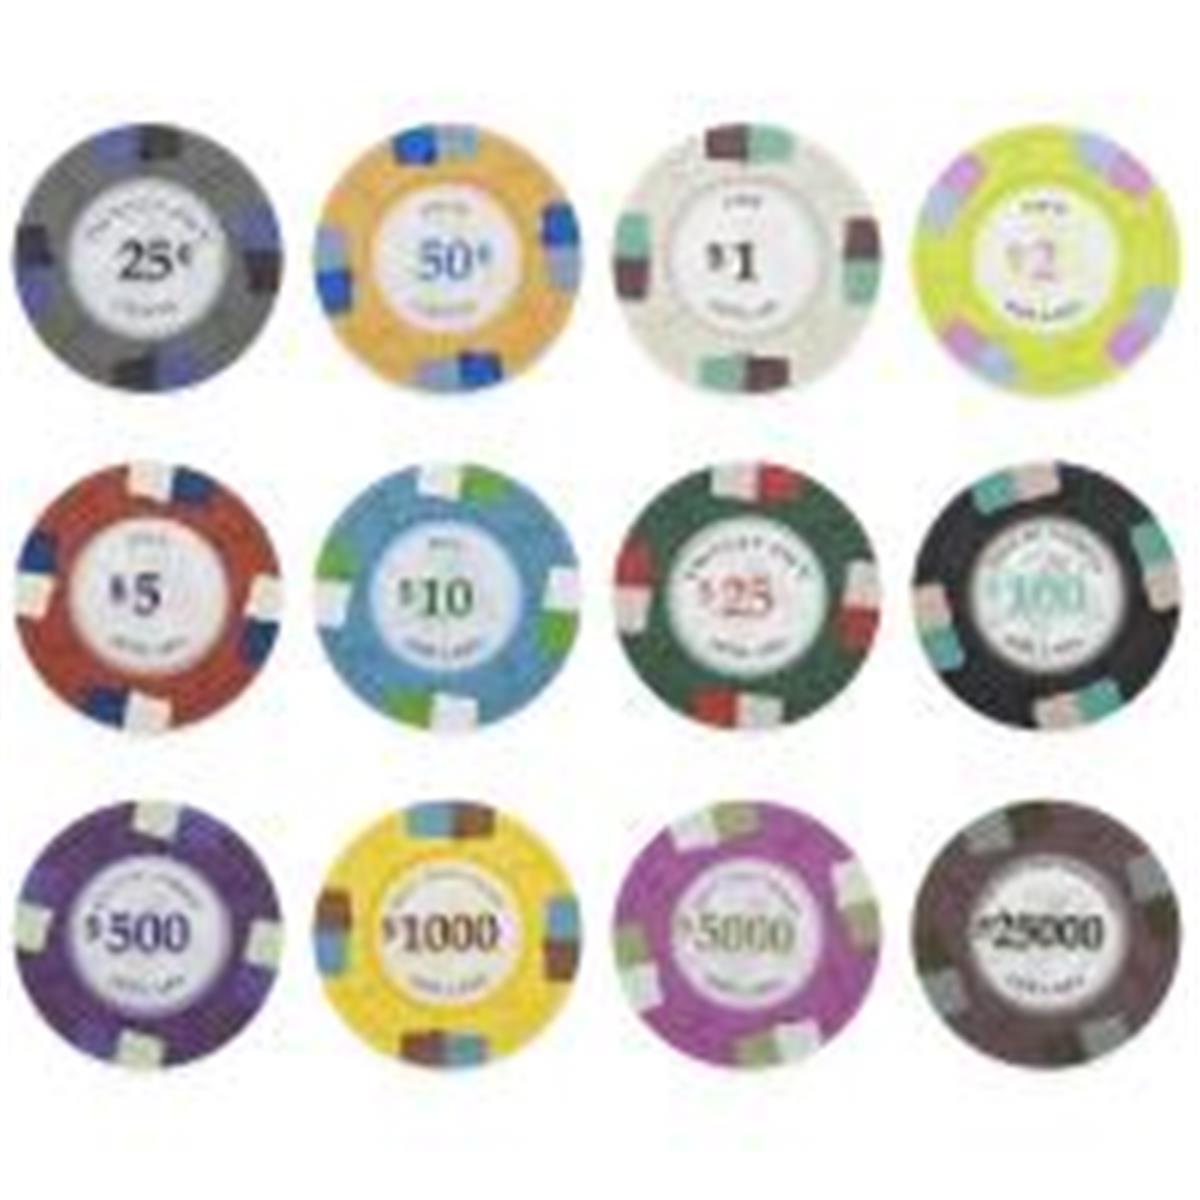 Cppk-sample 13.5 G Poker Knights, Poker Chips Sample Pack - Pack Of 15